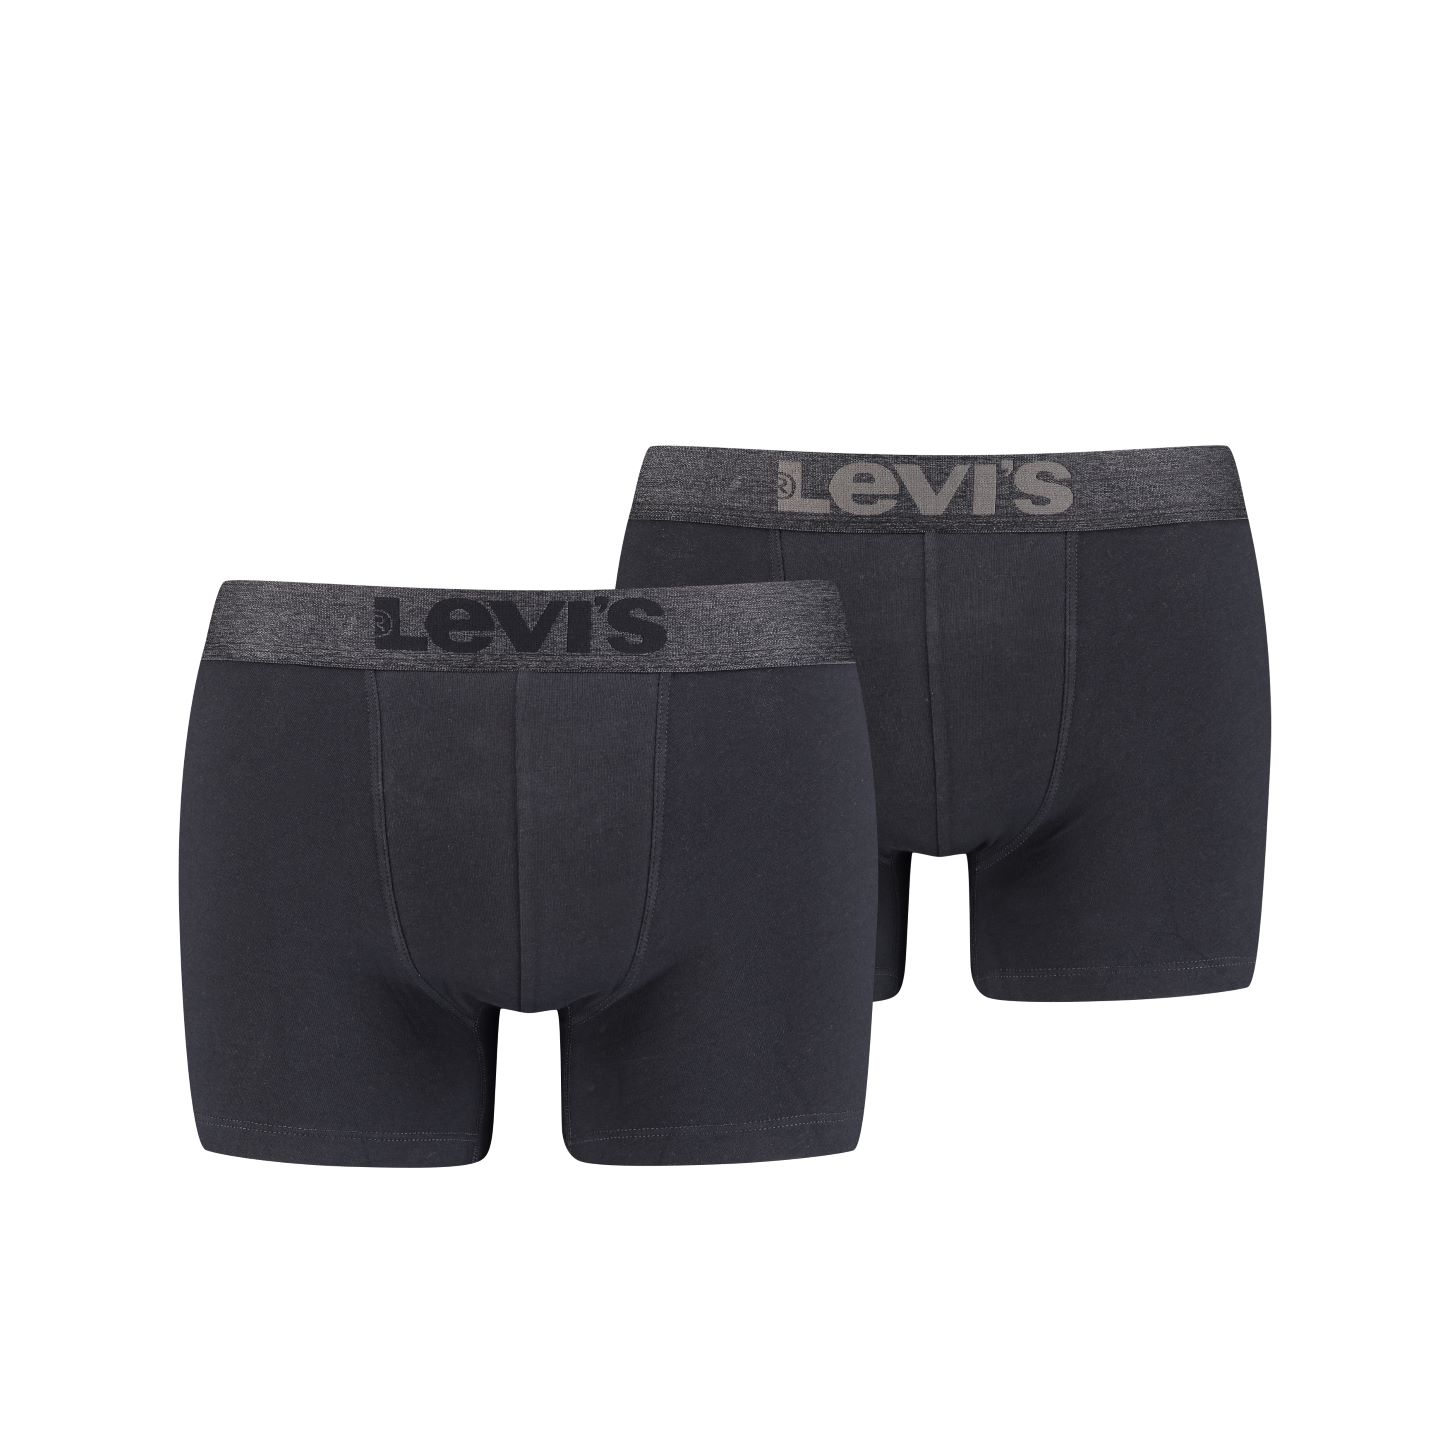 Levi's® BOXER BRIEF 2 PACK - Boxerky 2 kusy 37149-0629 Černá XL